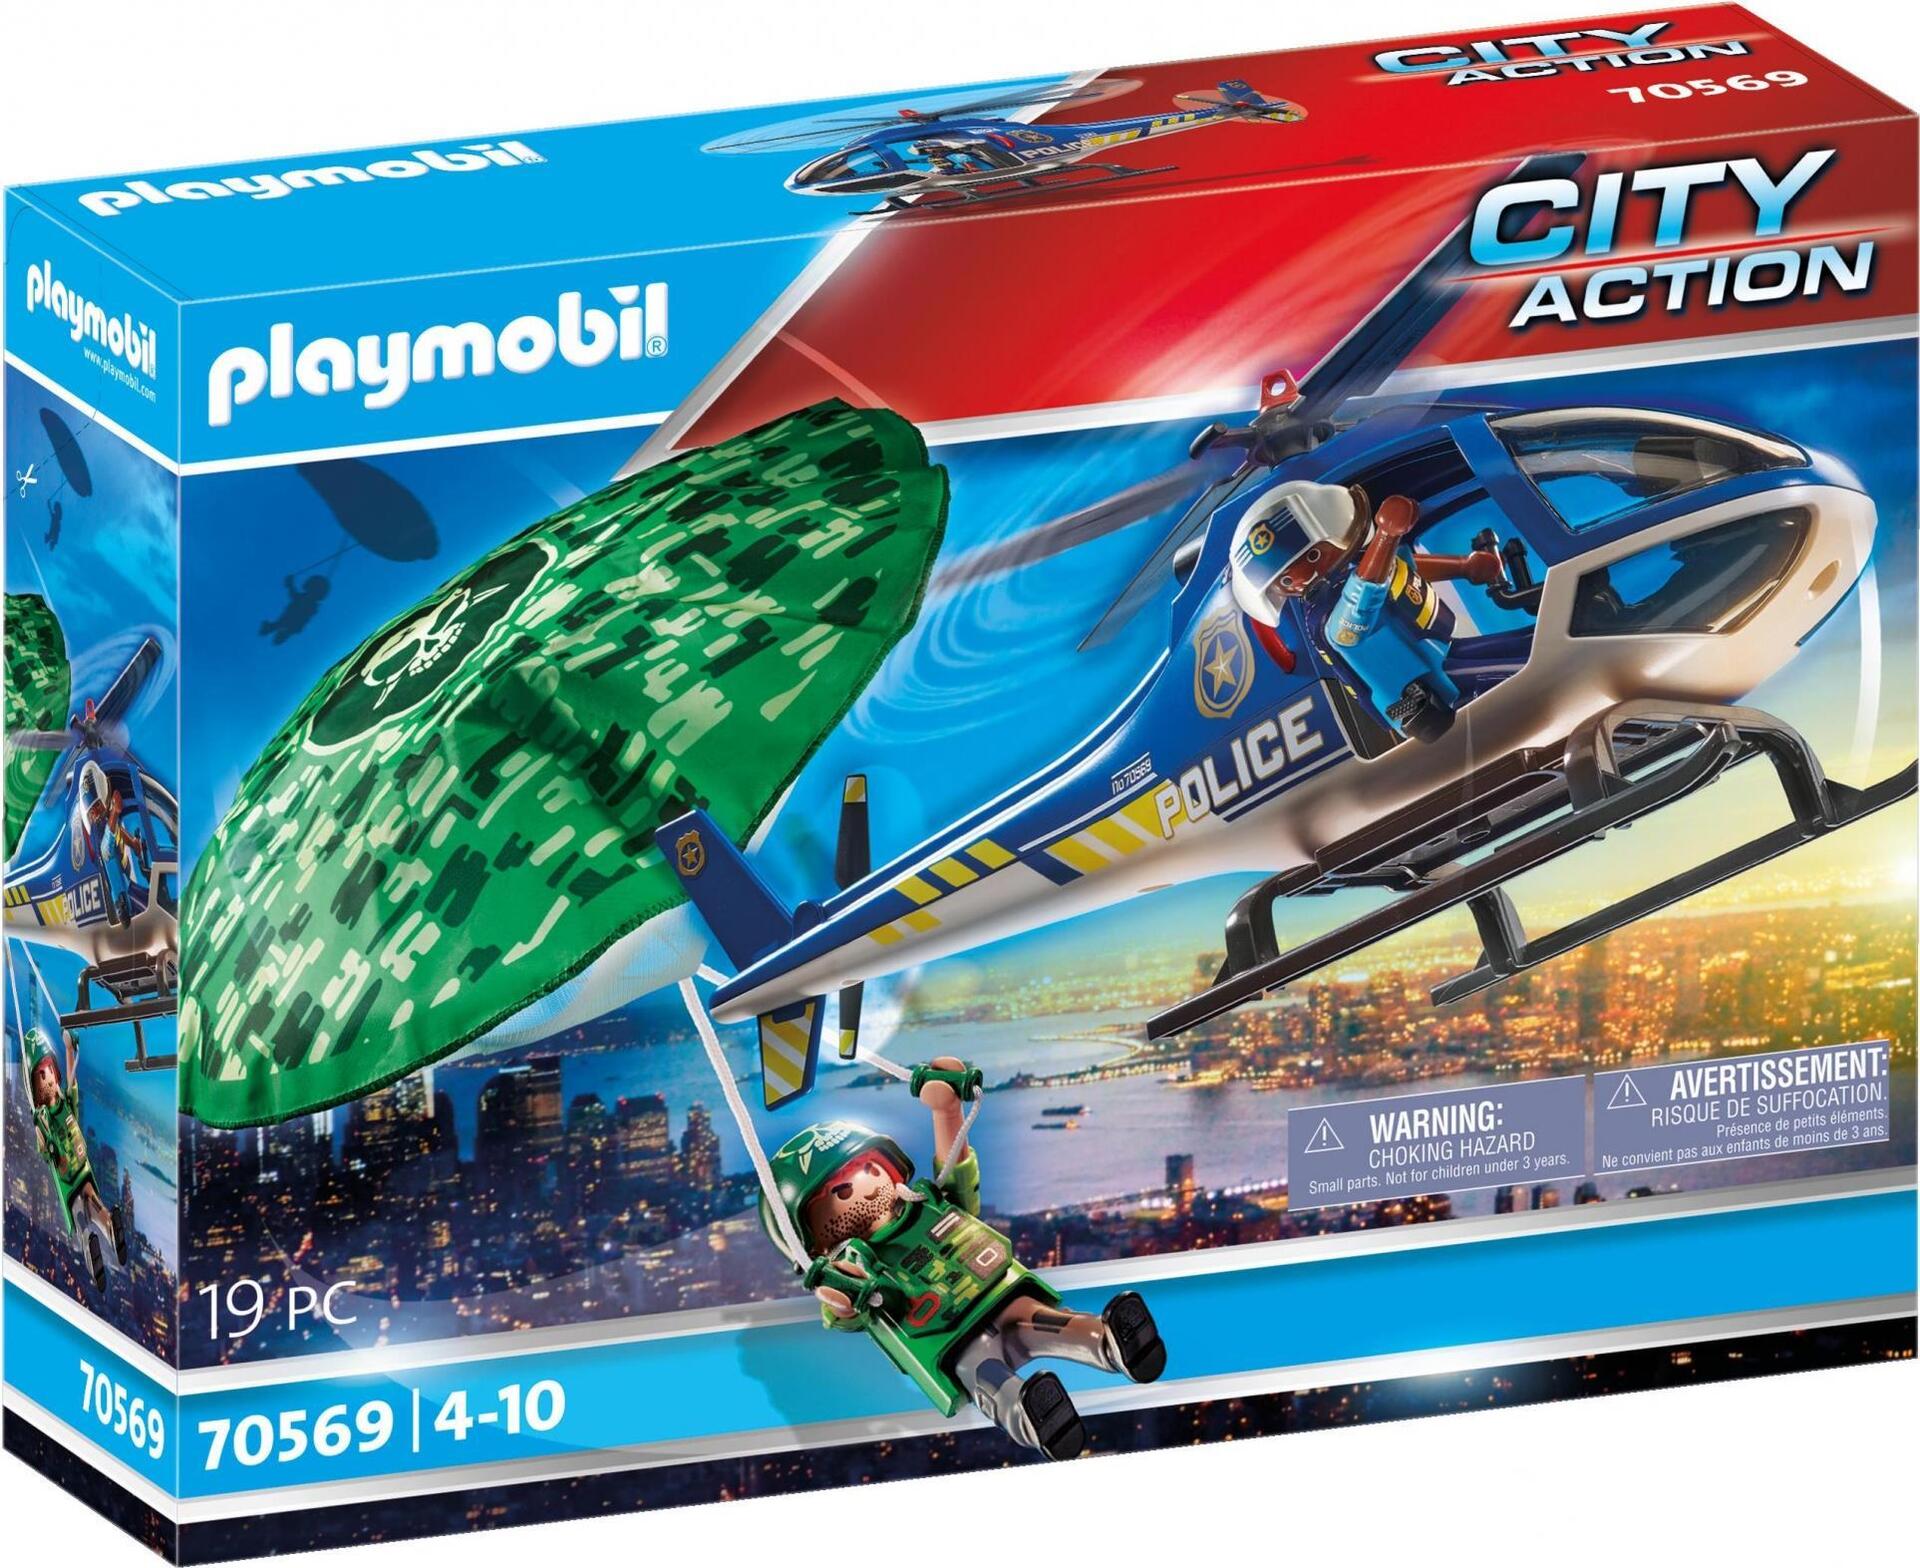 Playmobil City Action Polizei-Hubschrauber - Junge/Mädchen - 4 Jahr(e) - Kunststoff - Mehrfarben (70569)